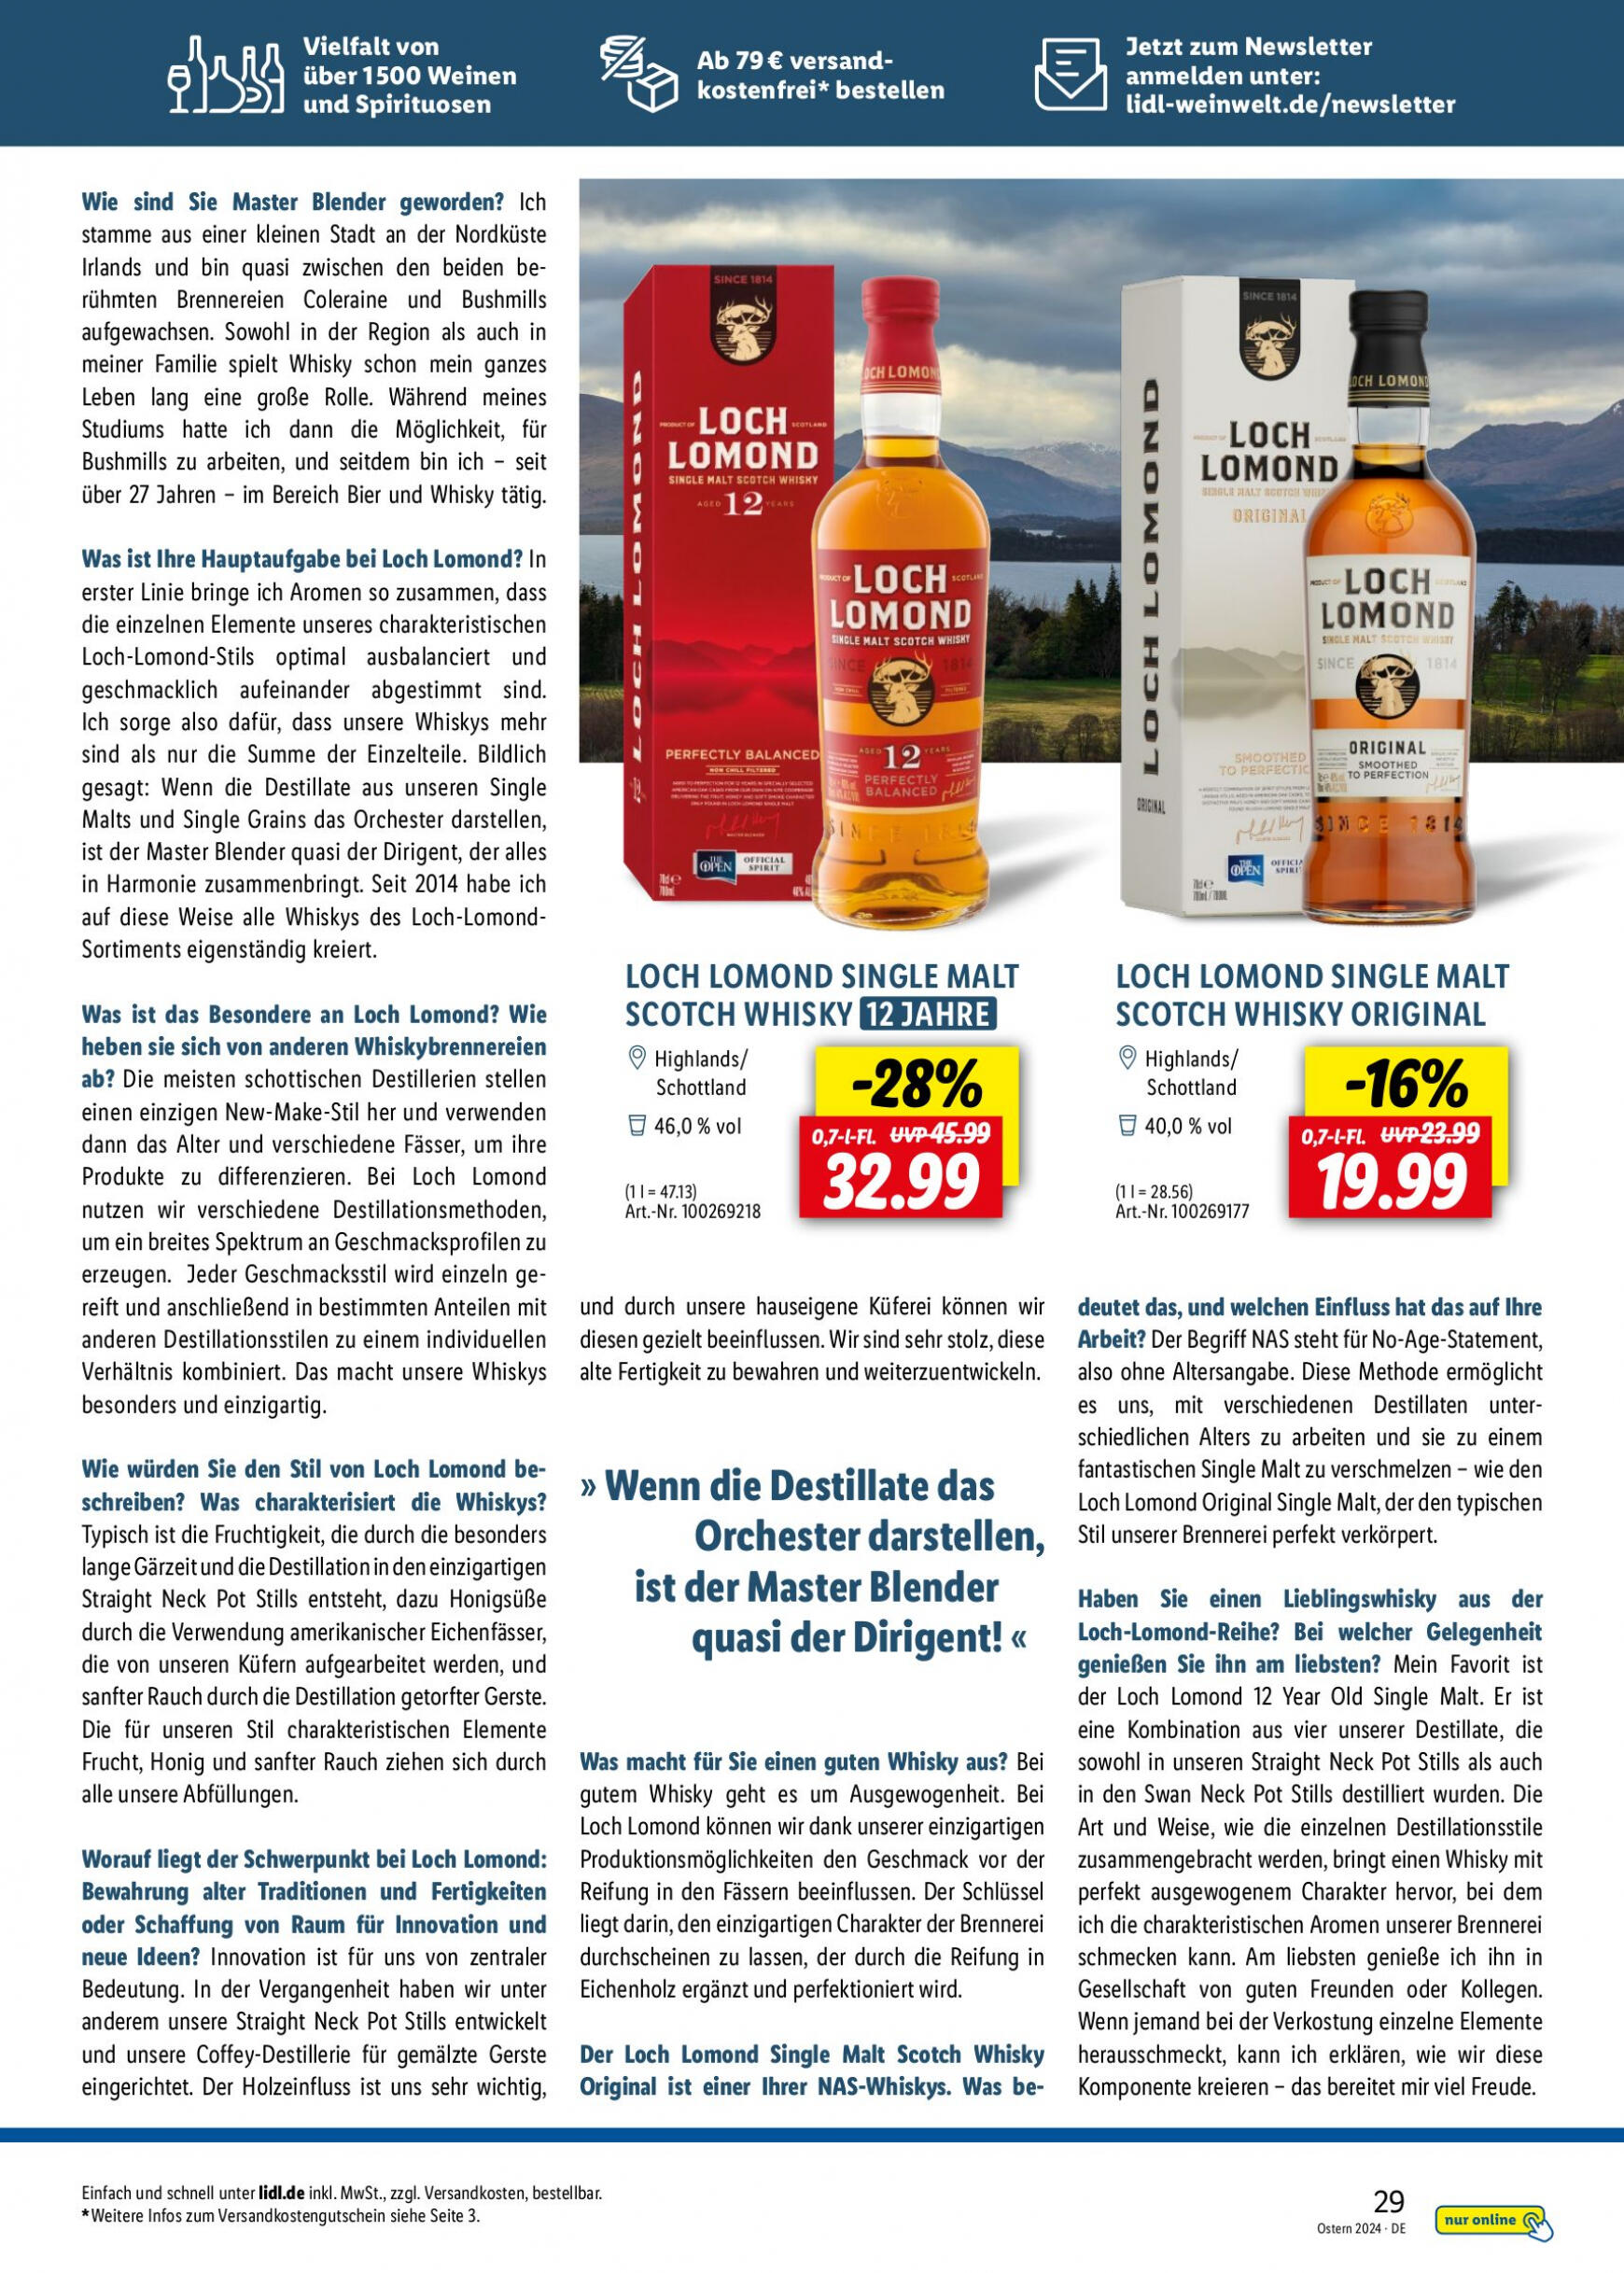 lidl - Flyer Lidl - Wein Entkorkt aktuell 04.03. - 30.04. - page: 29